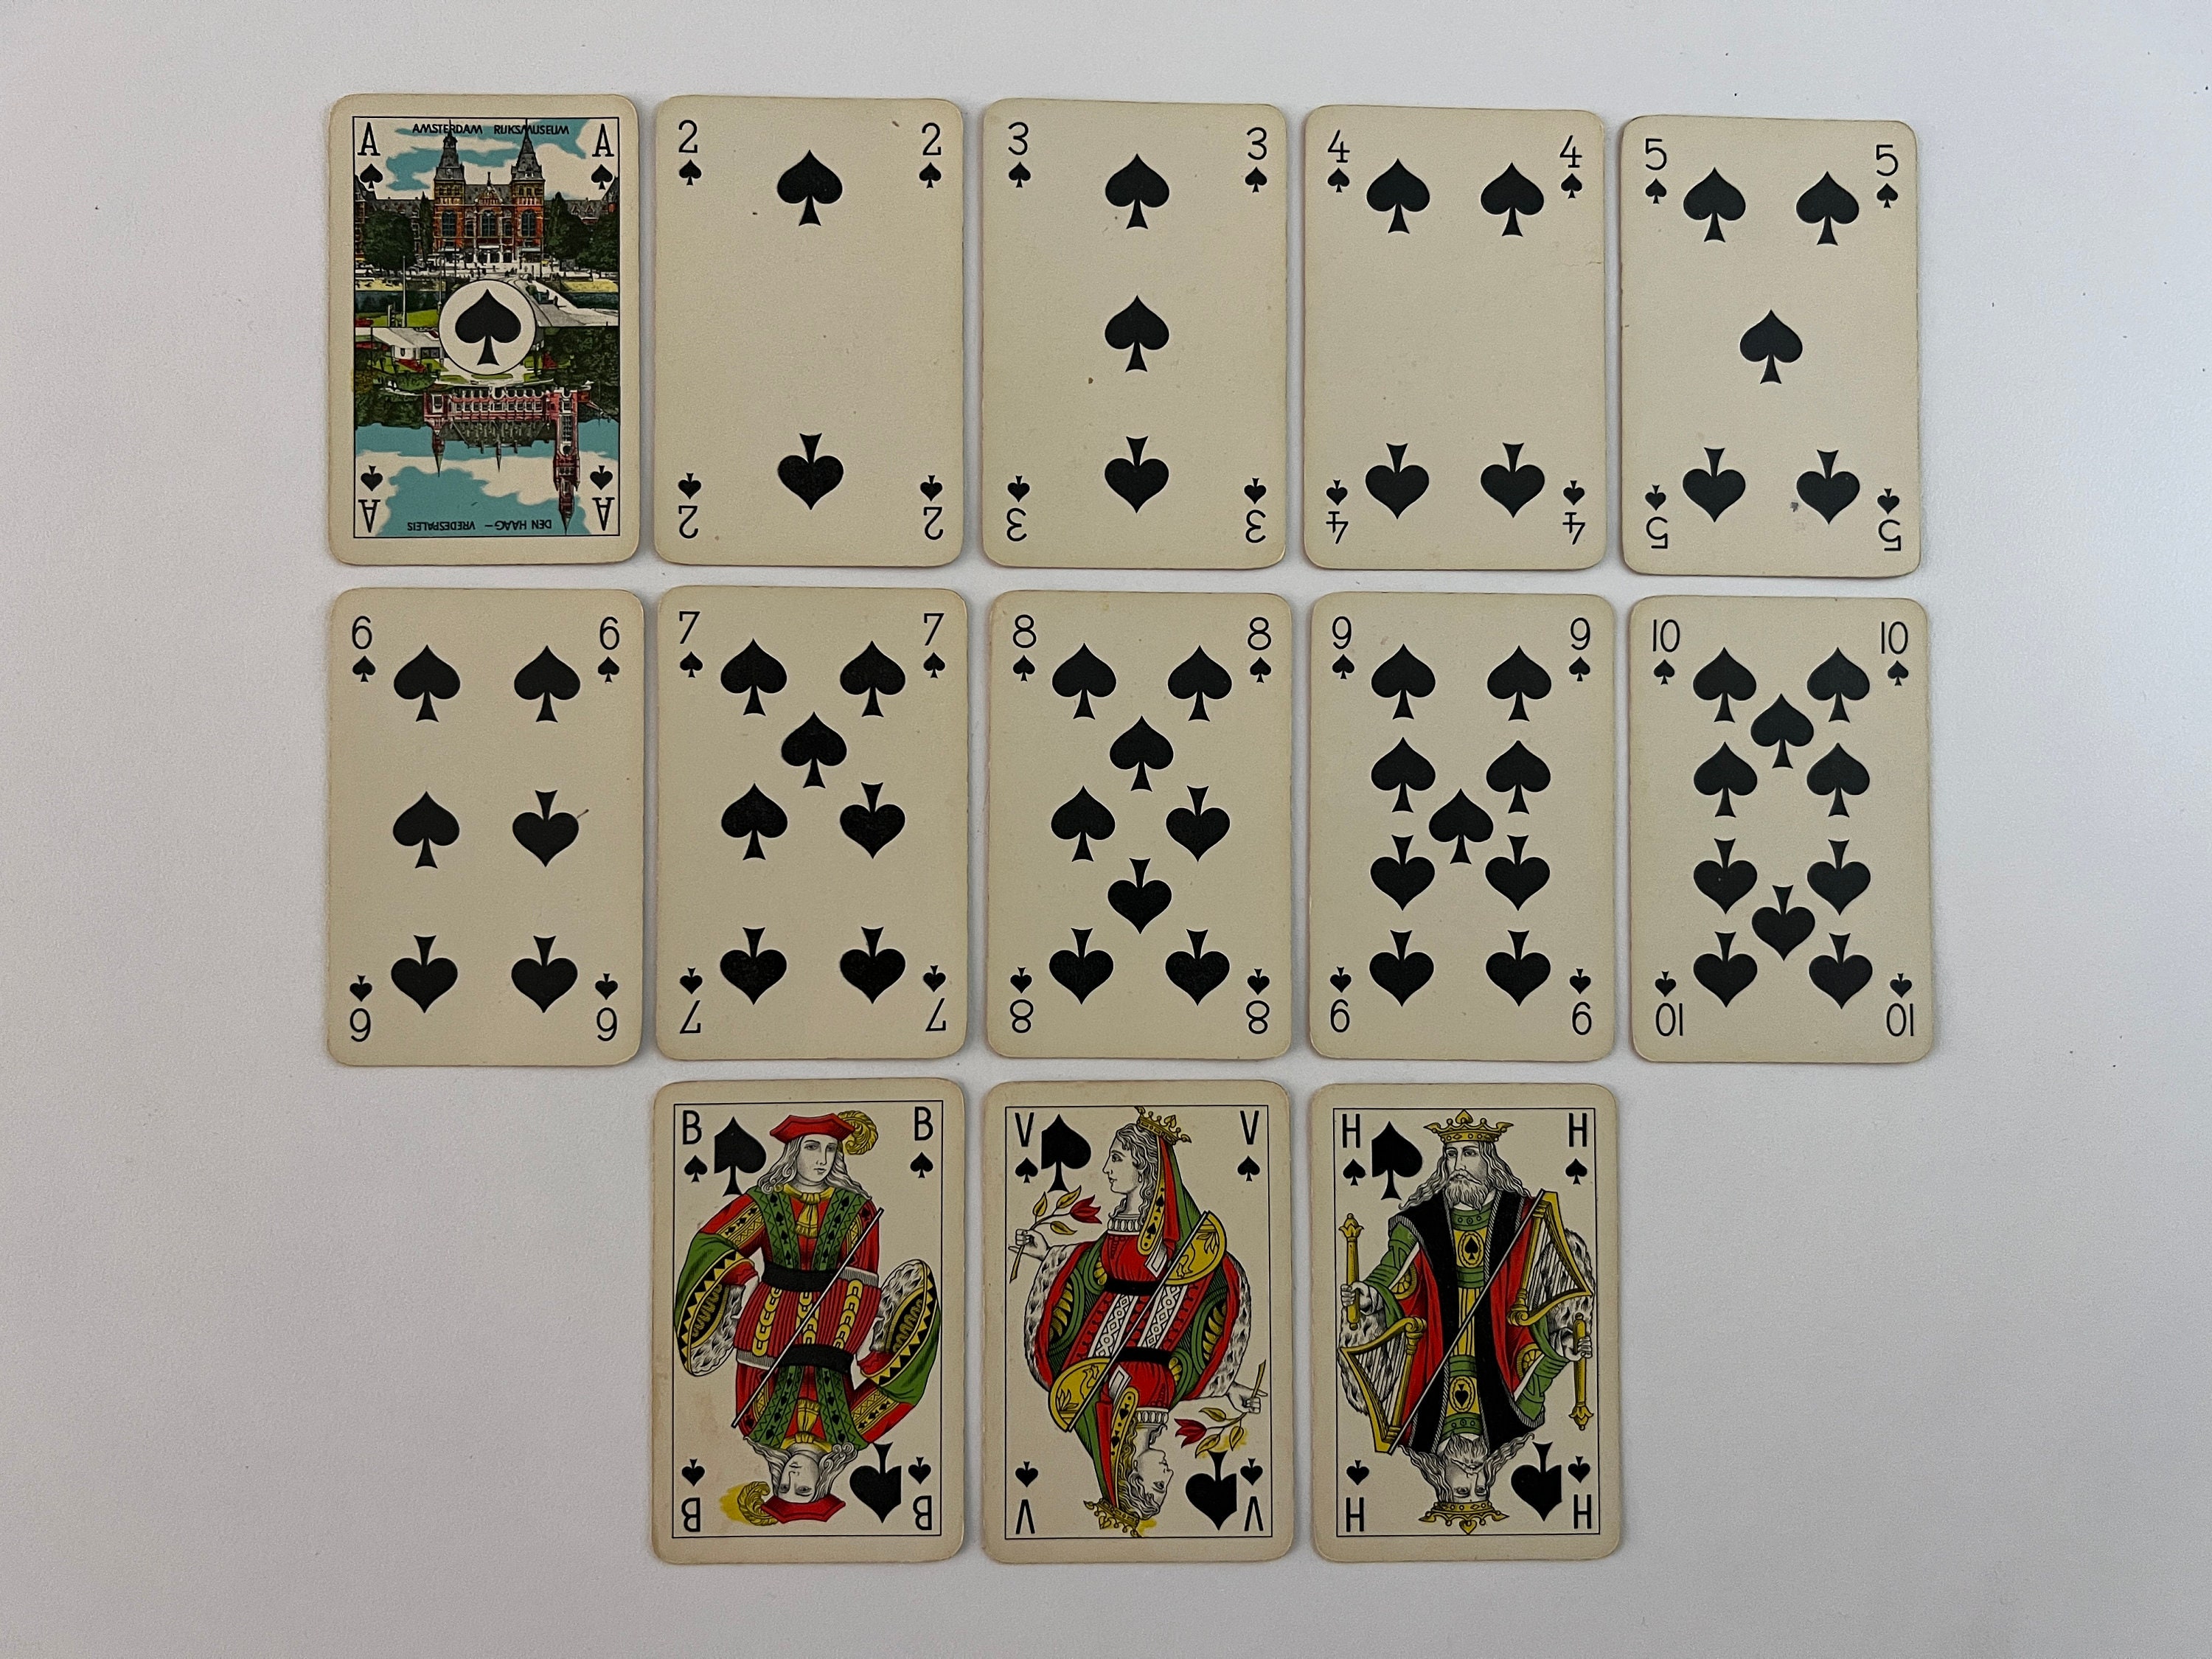 Louis Vuitton Playing Cards Jeu de Cartes Rare Used